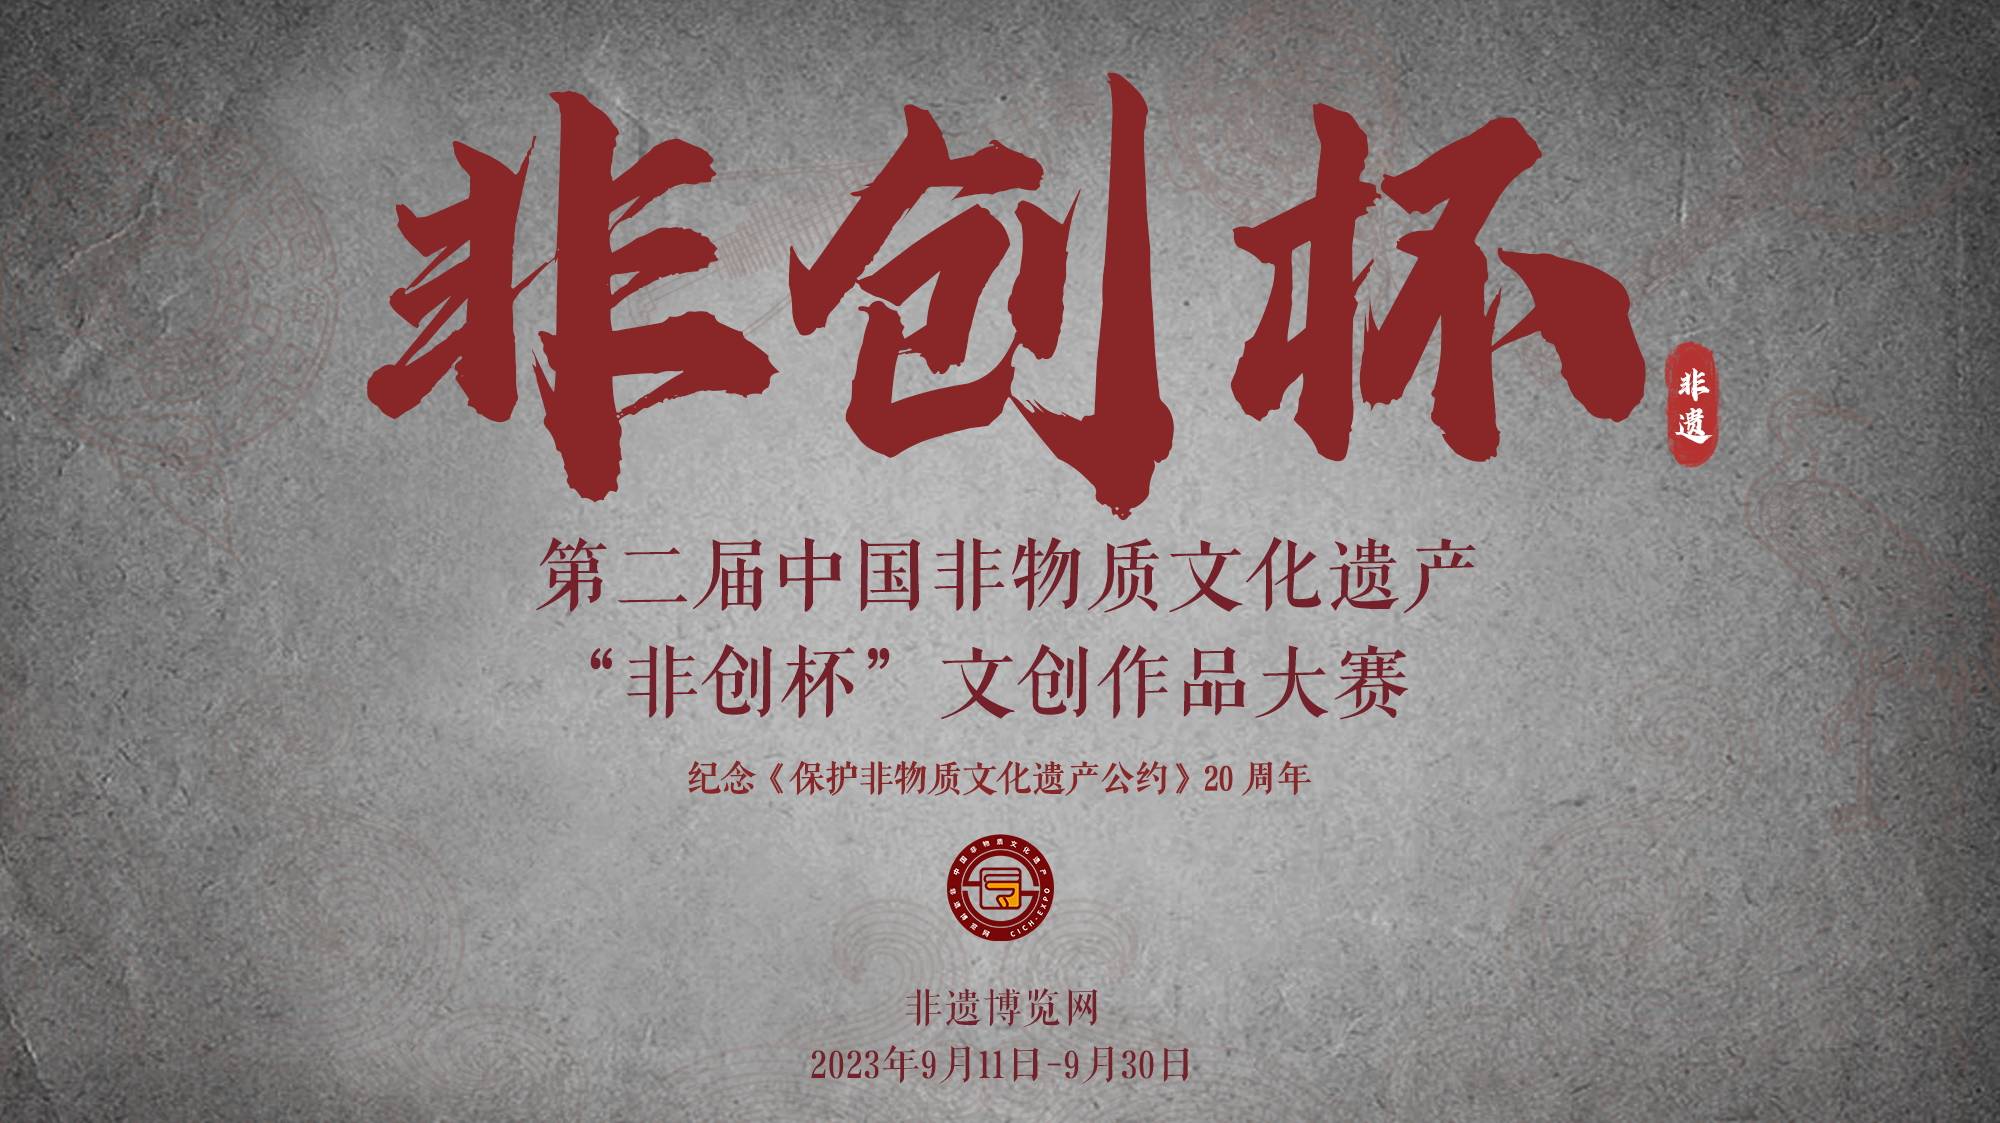 关于举办第二届中国非物质文化遗产 “非创